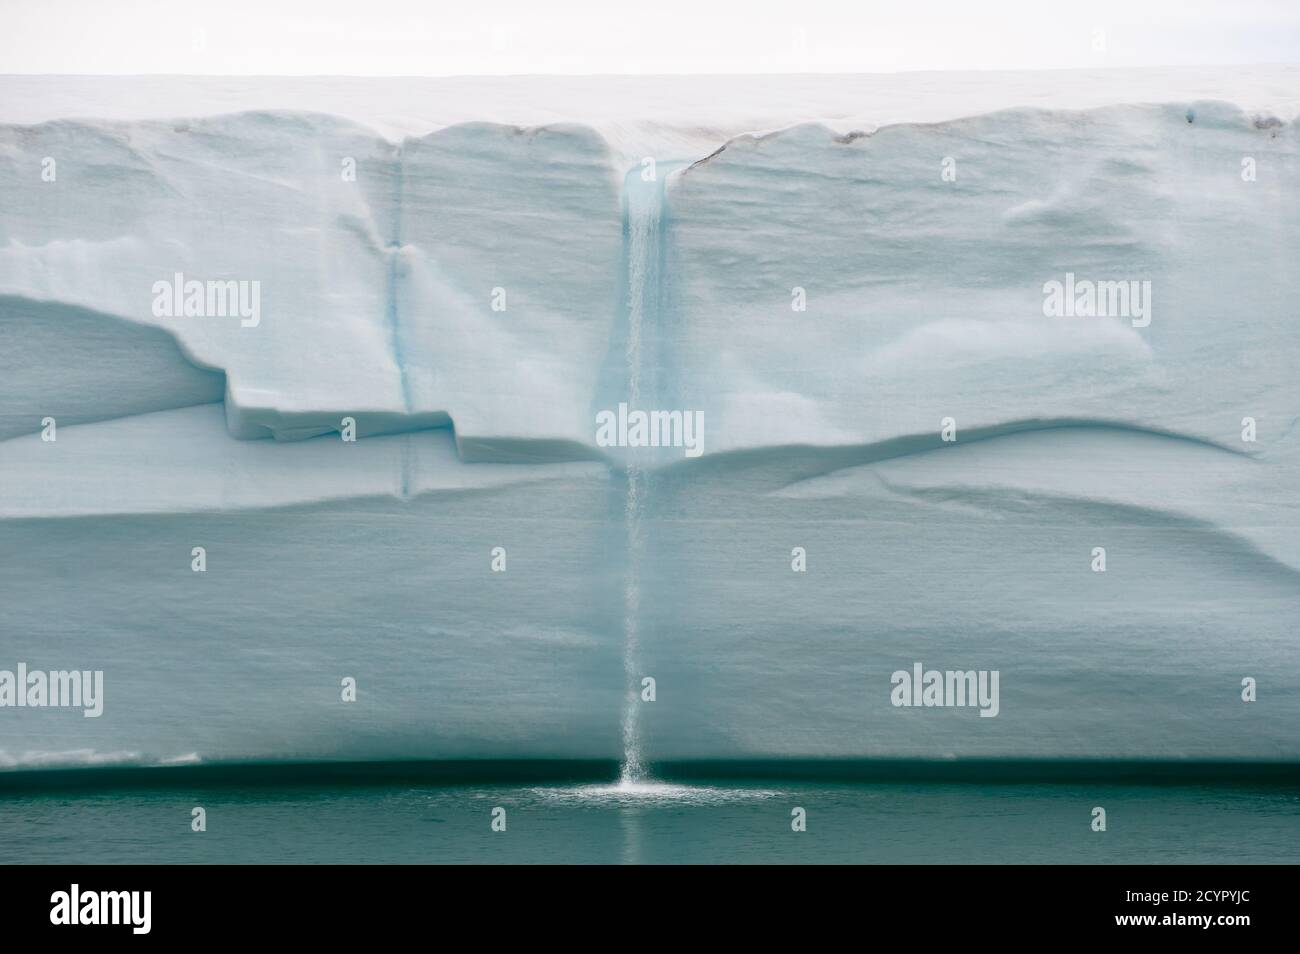 Schmelzendes Eiswasser fällt von einer nördlichen arktischen Gletscherwand Als Wasserfall in einen türkisfarbenen Ozean.Klimawandel.Klimanotstand Stockfoto